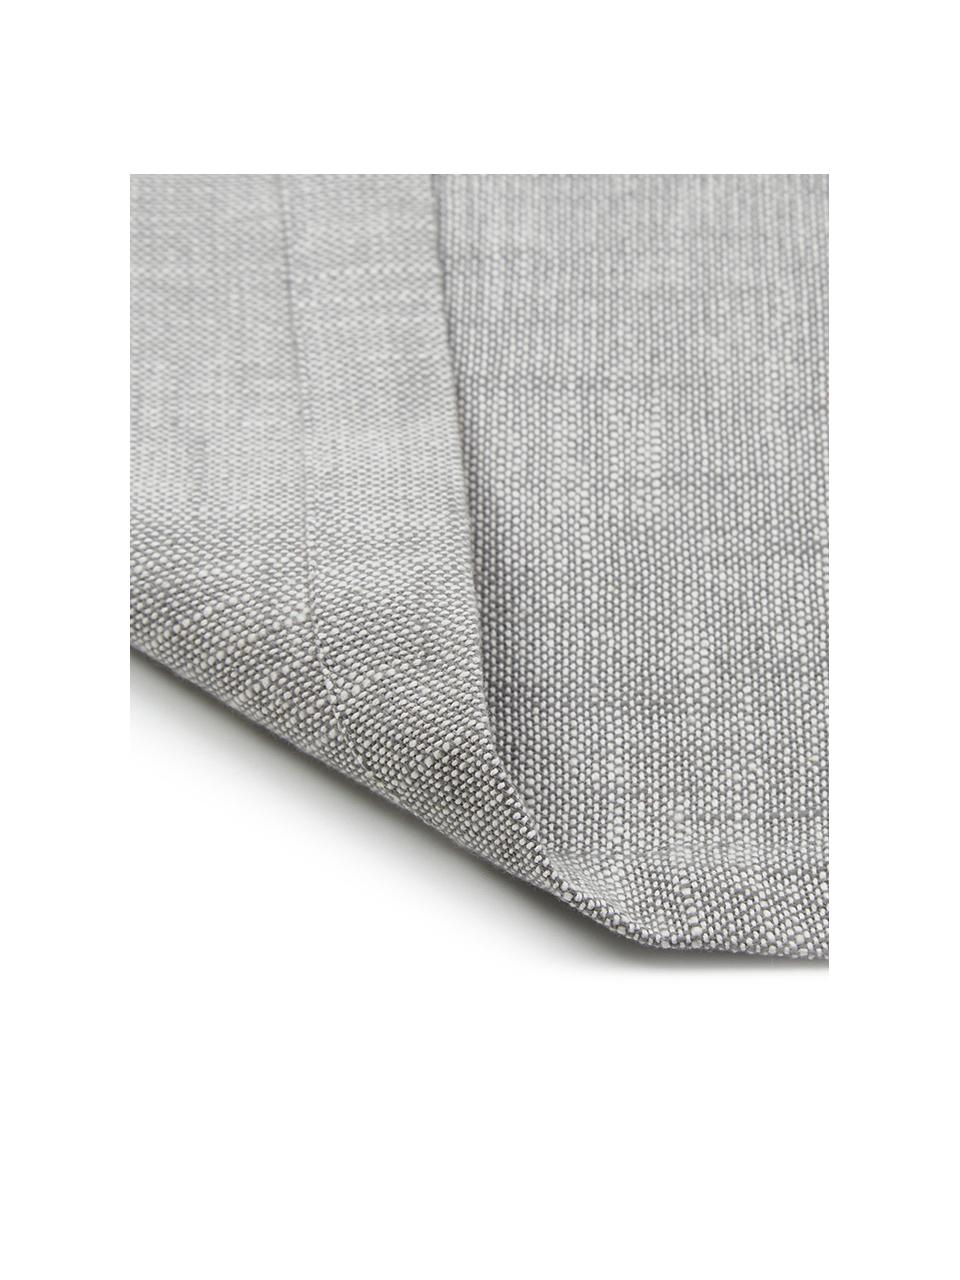 Tischläufer Tonnika, Baumwolle, Grau, 45 x 150 cm